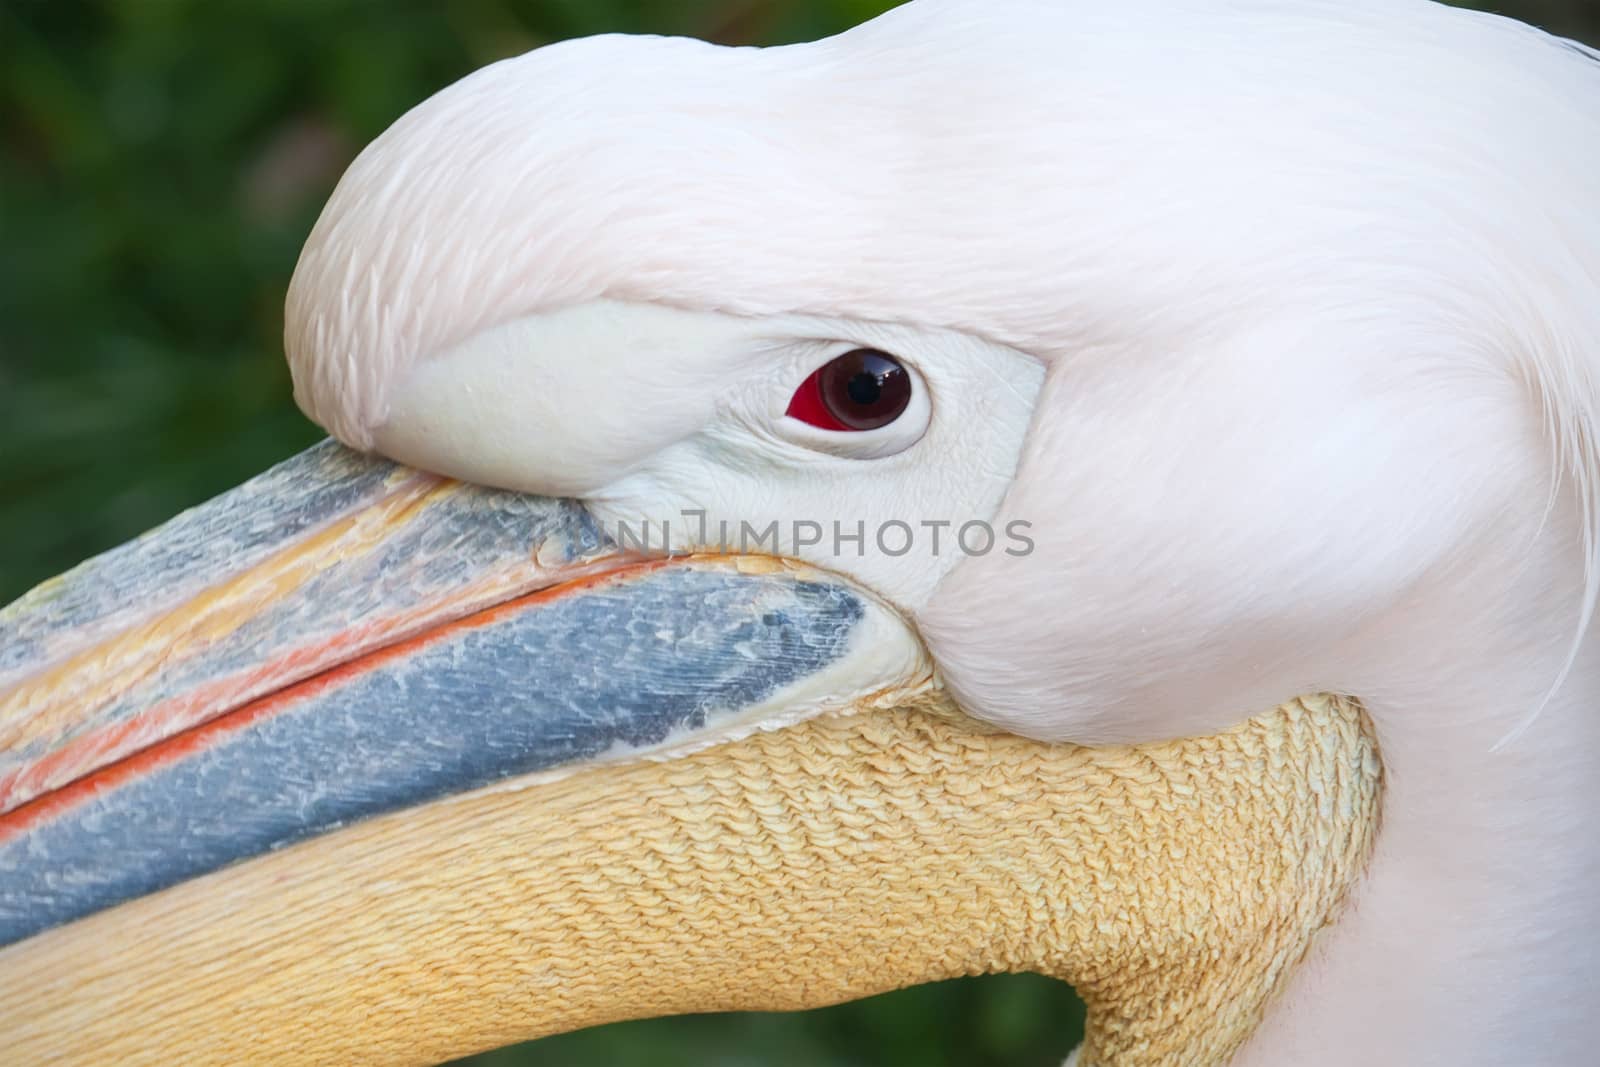 Beautiufl close-up photo of cute white pelican